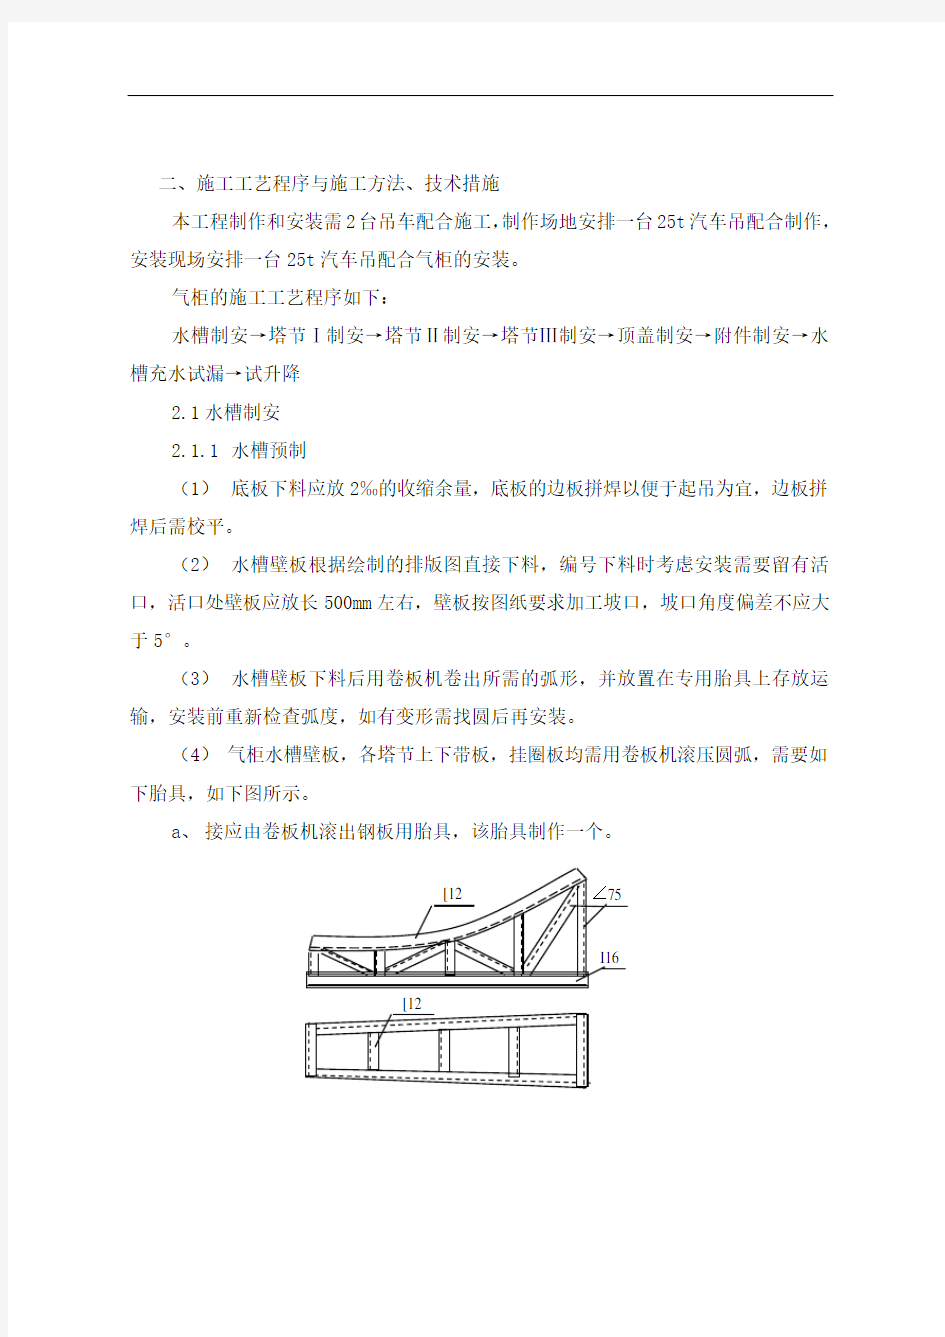 晋城10000立方米气柜施工方案